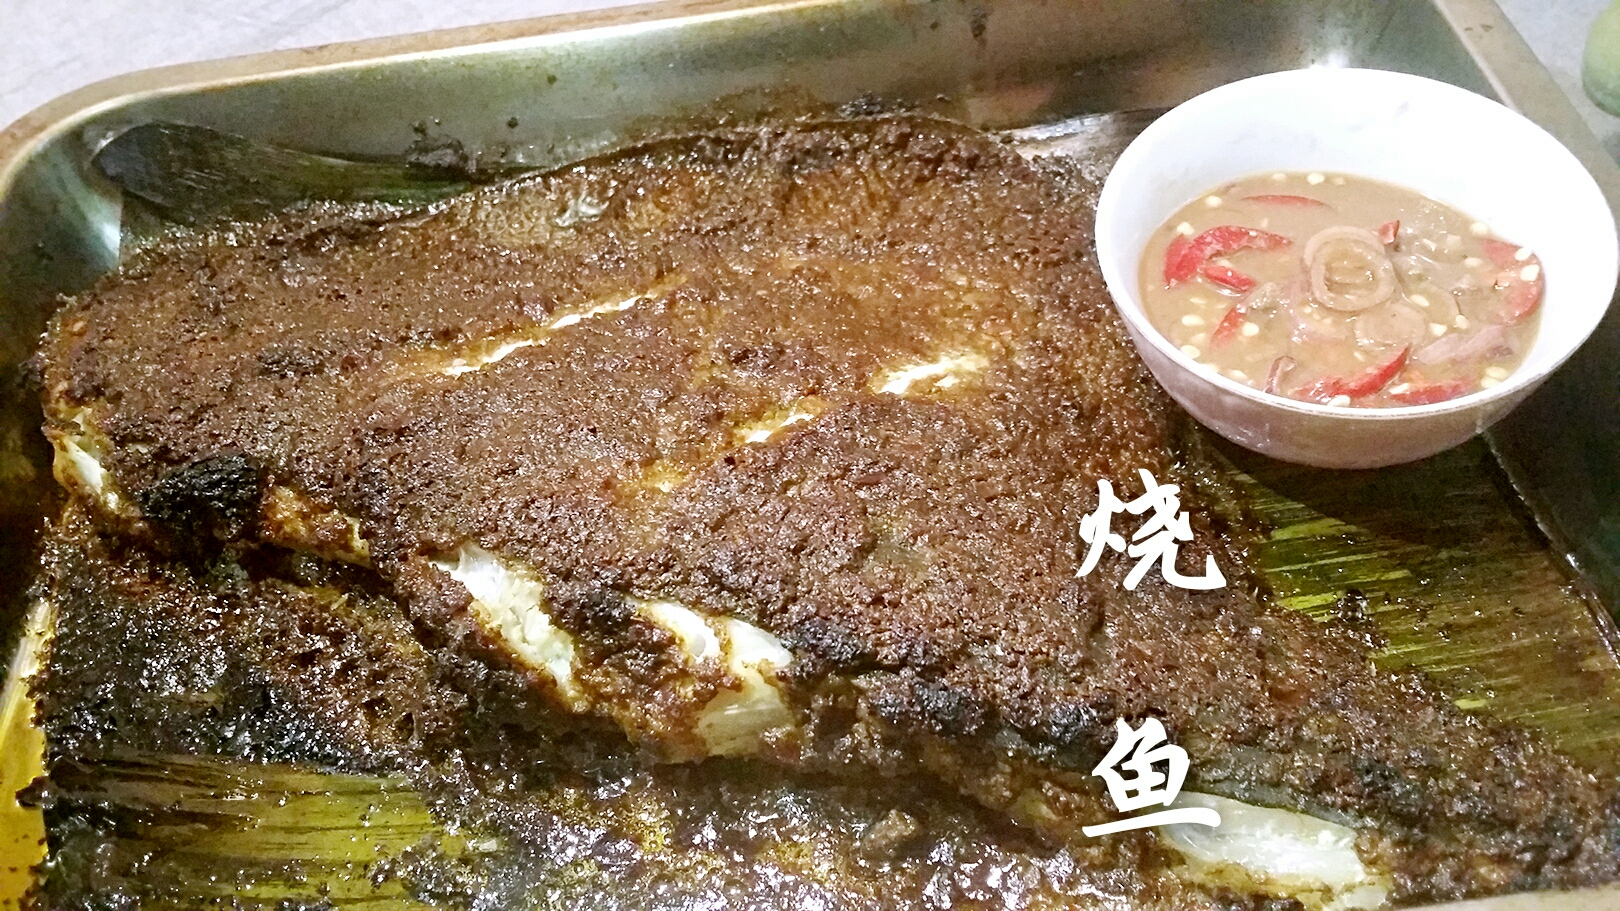 烤箱版马来西亚烧鱼(Ikan Bakar)